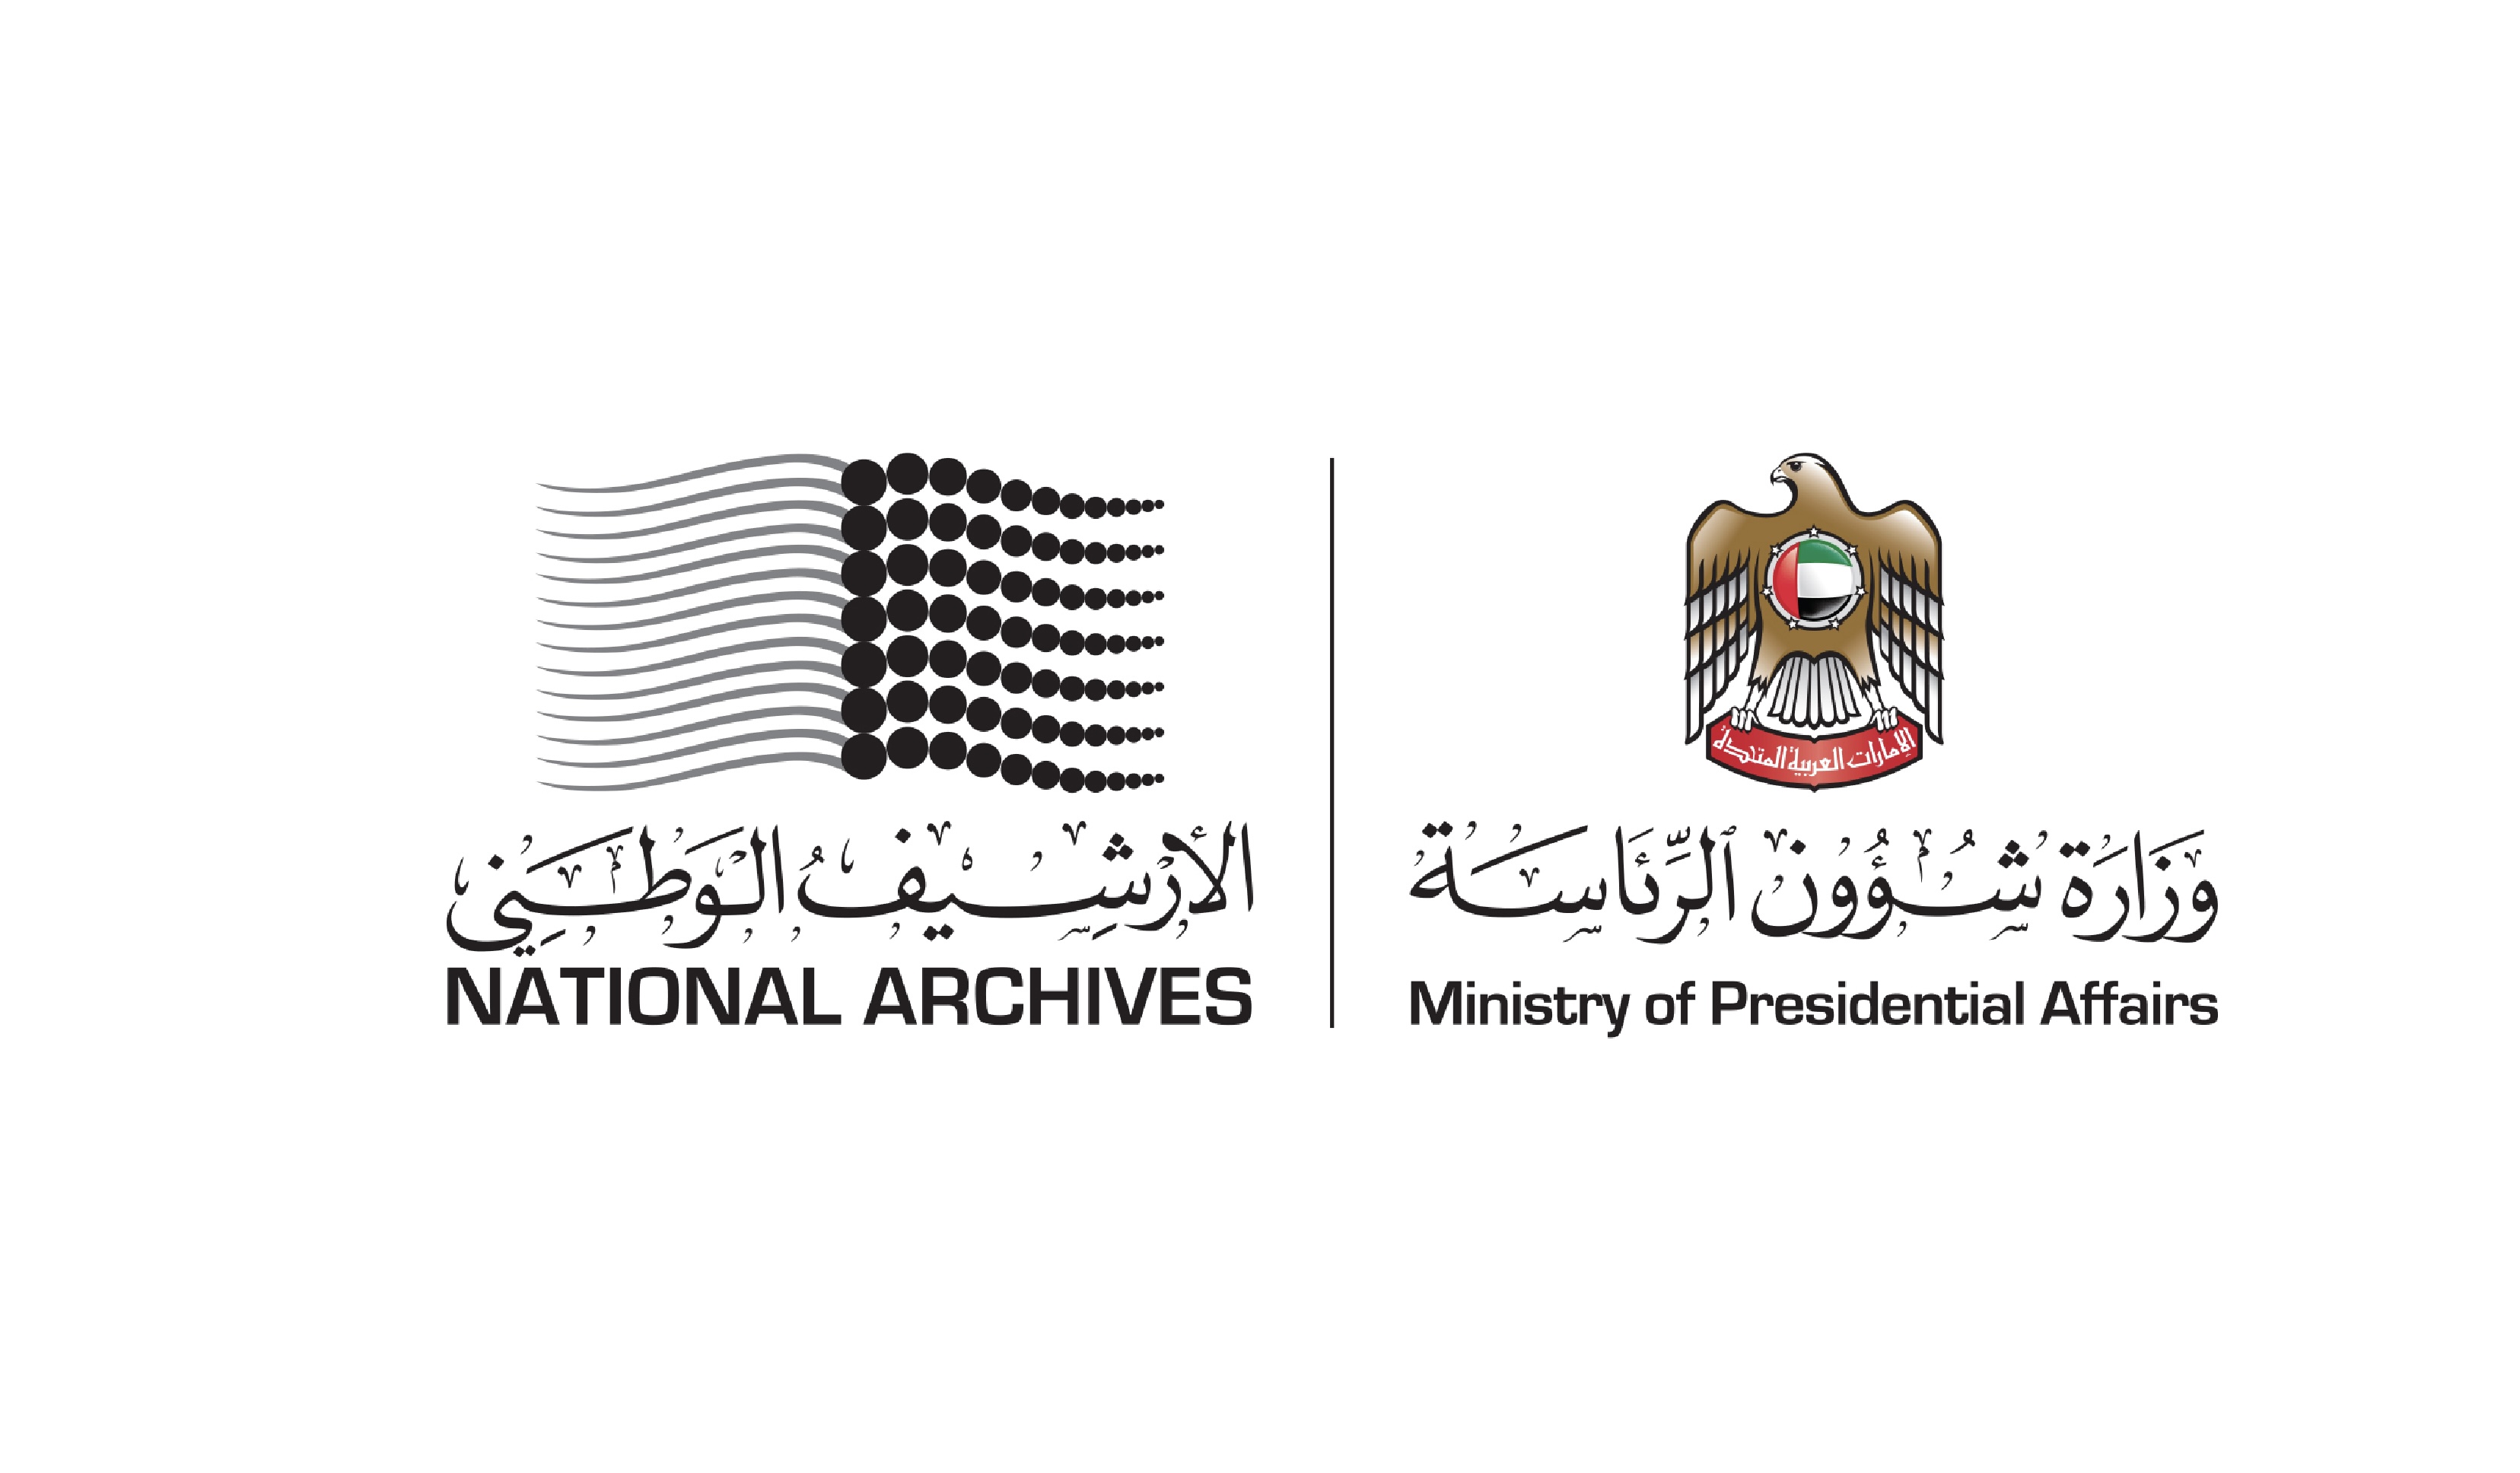 الأرشيف الوطني ينظم مؤتمرا افتراضيا عن الترجمة في العصر الرقمي 29 يونيو المقبل